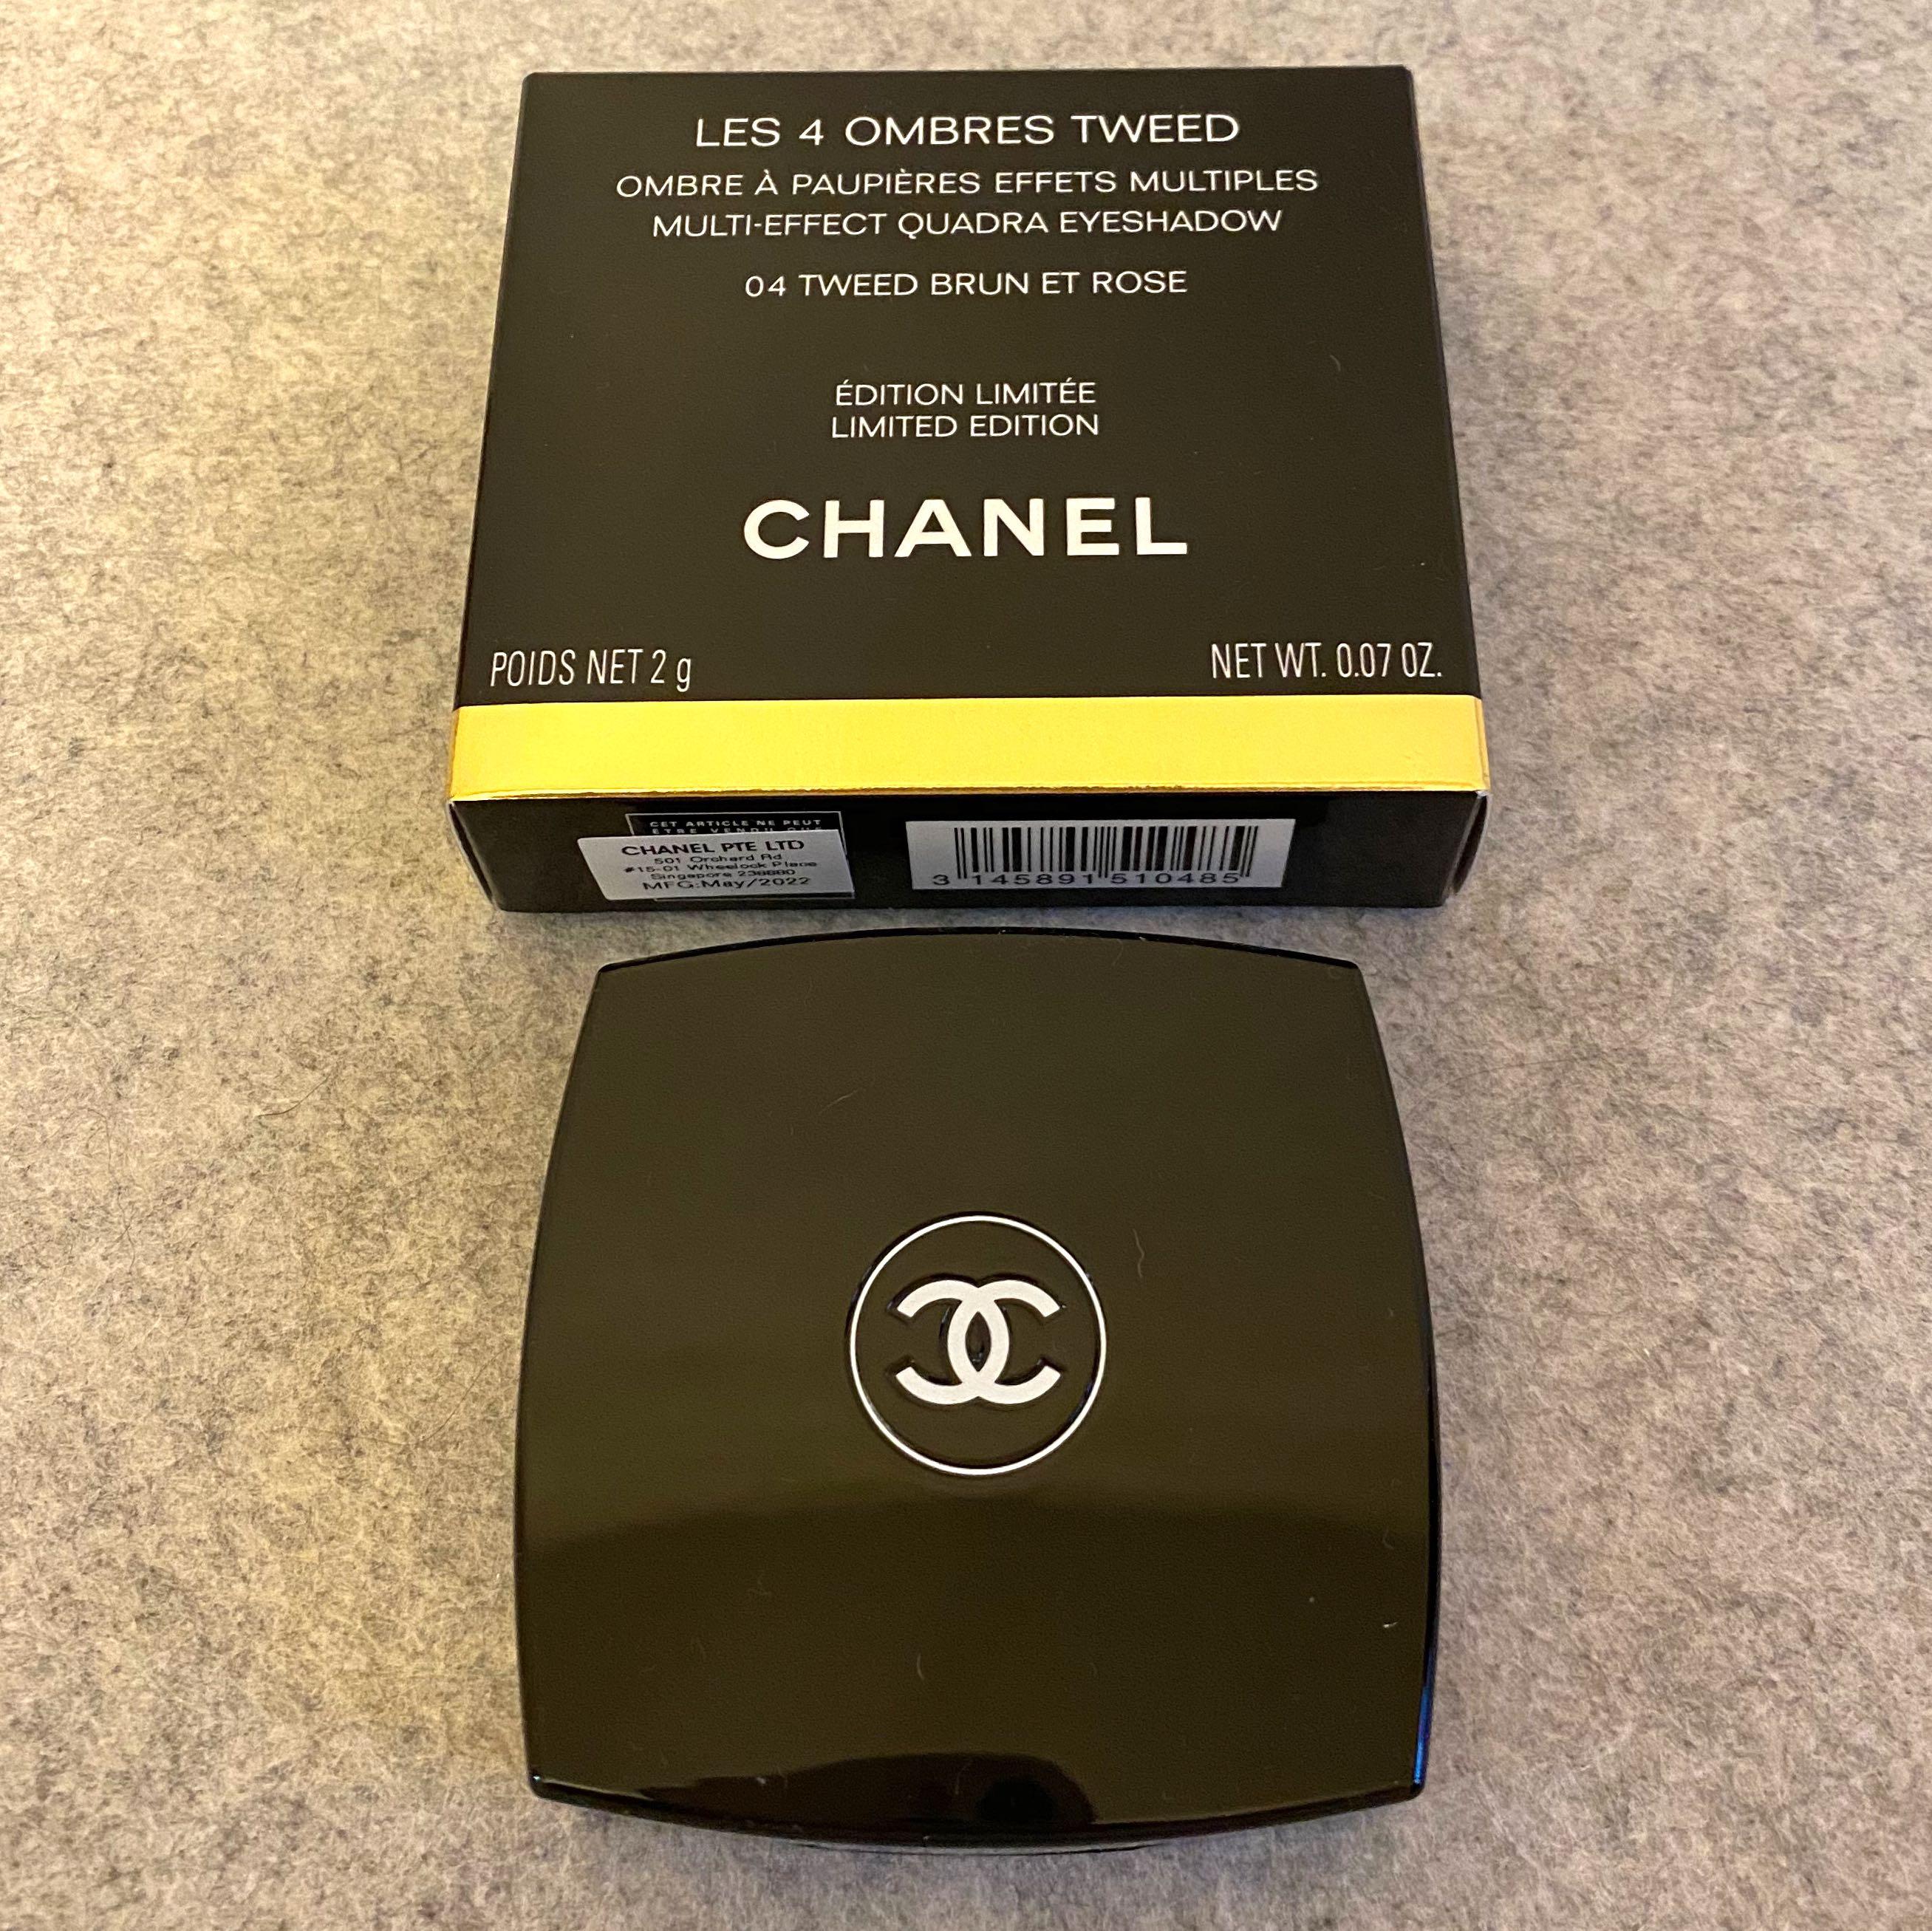 BNIB Chanel Eyeshadow / Chanel Limited Edition Eyeshadow / Chanel Tweed  Eyeshadow with receipt